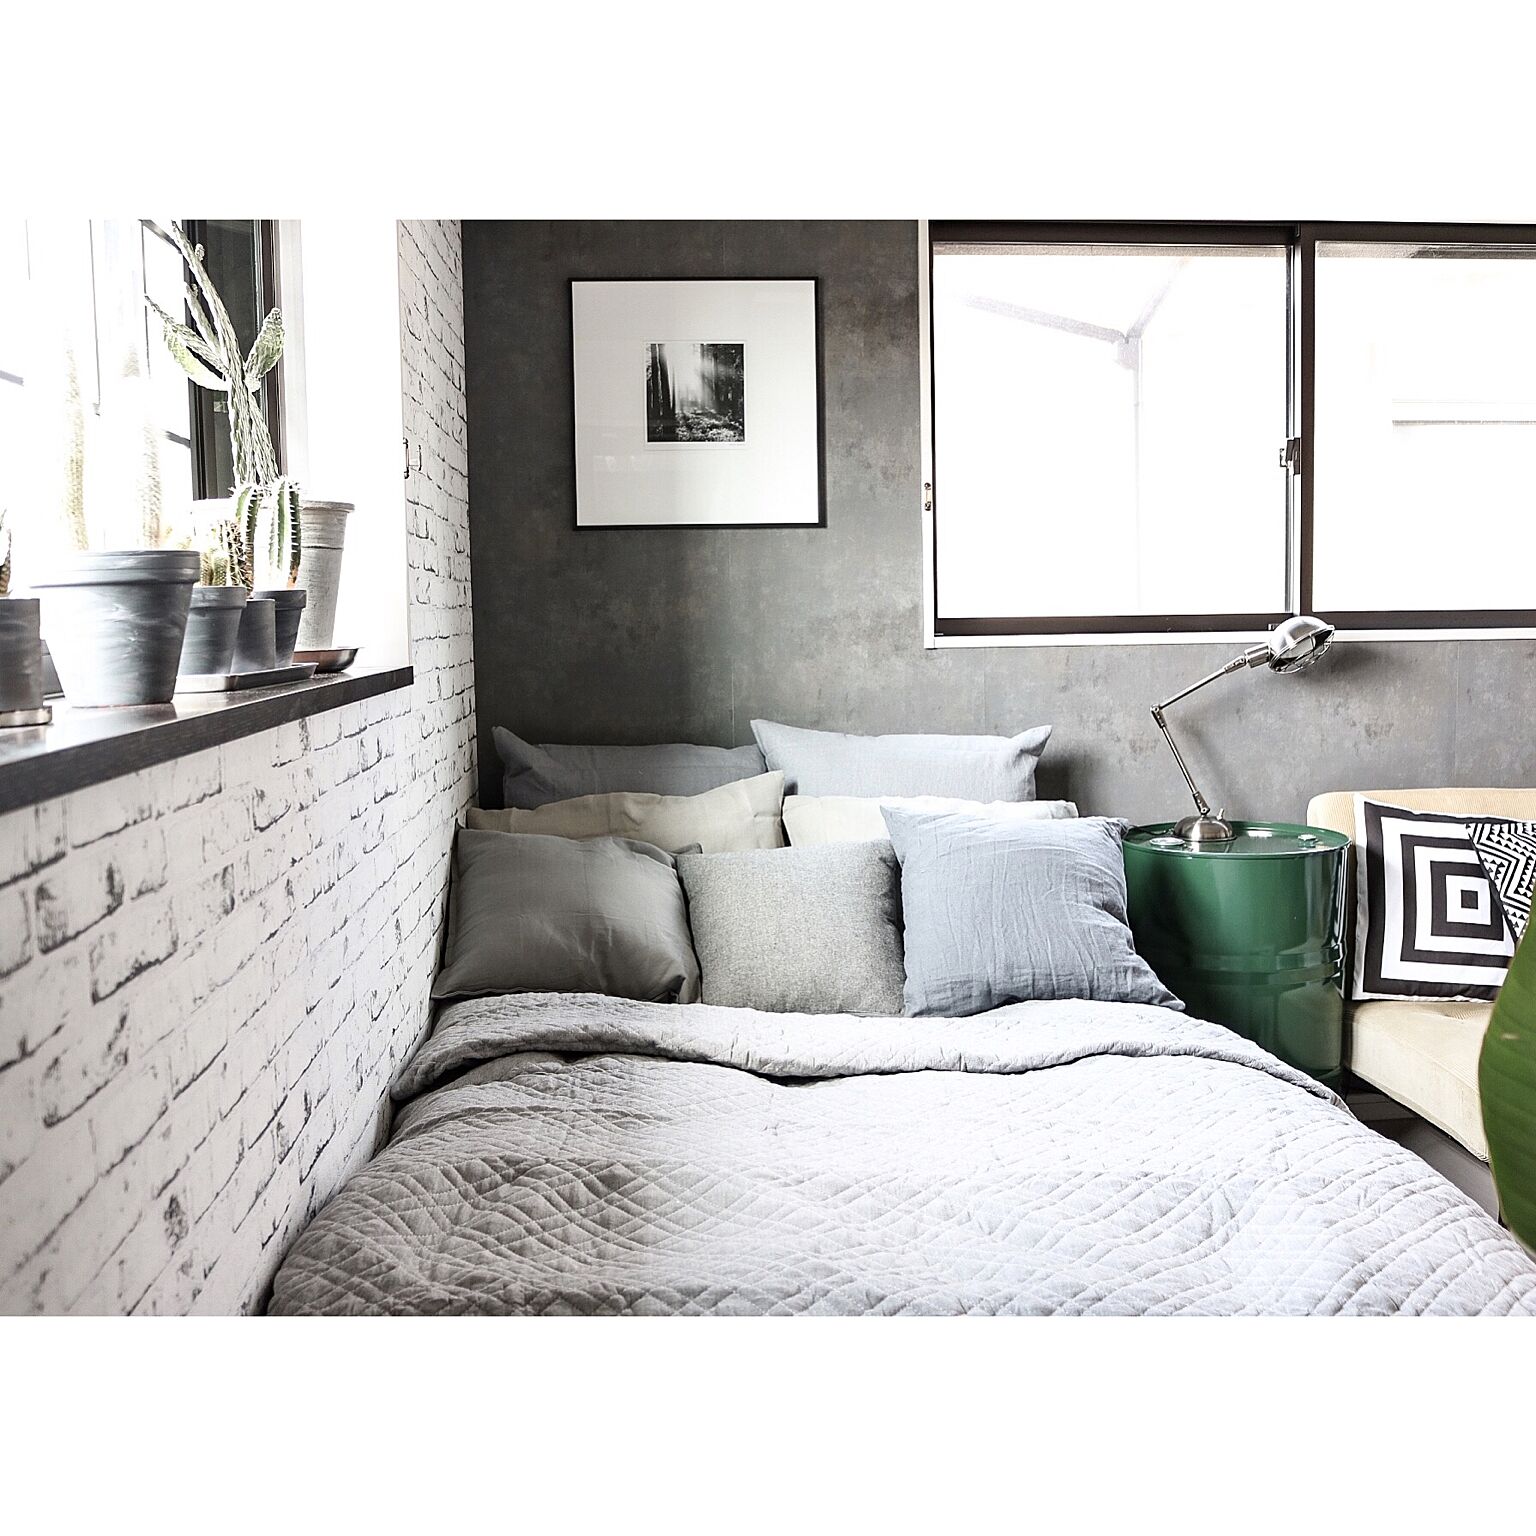 IKEAアイテムが優秀！ホテルライクな寝室の作り方 | RoomClip mag